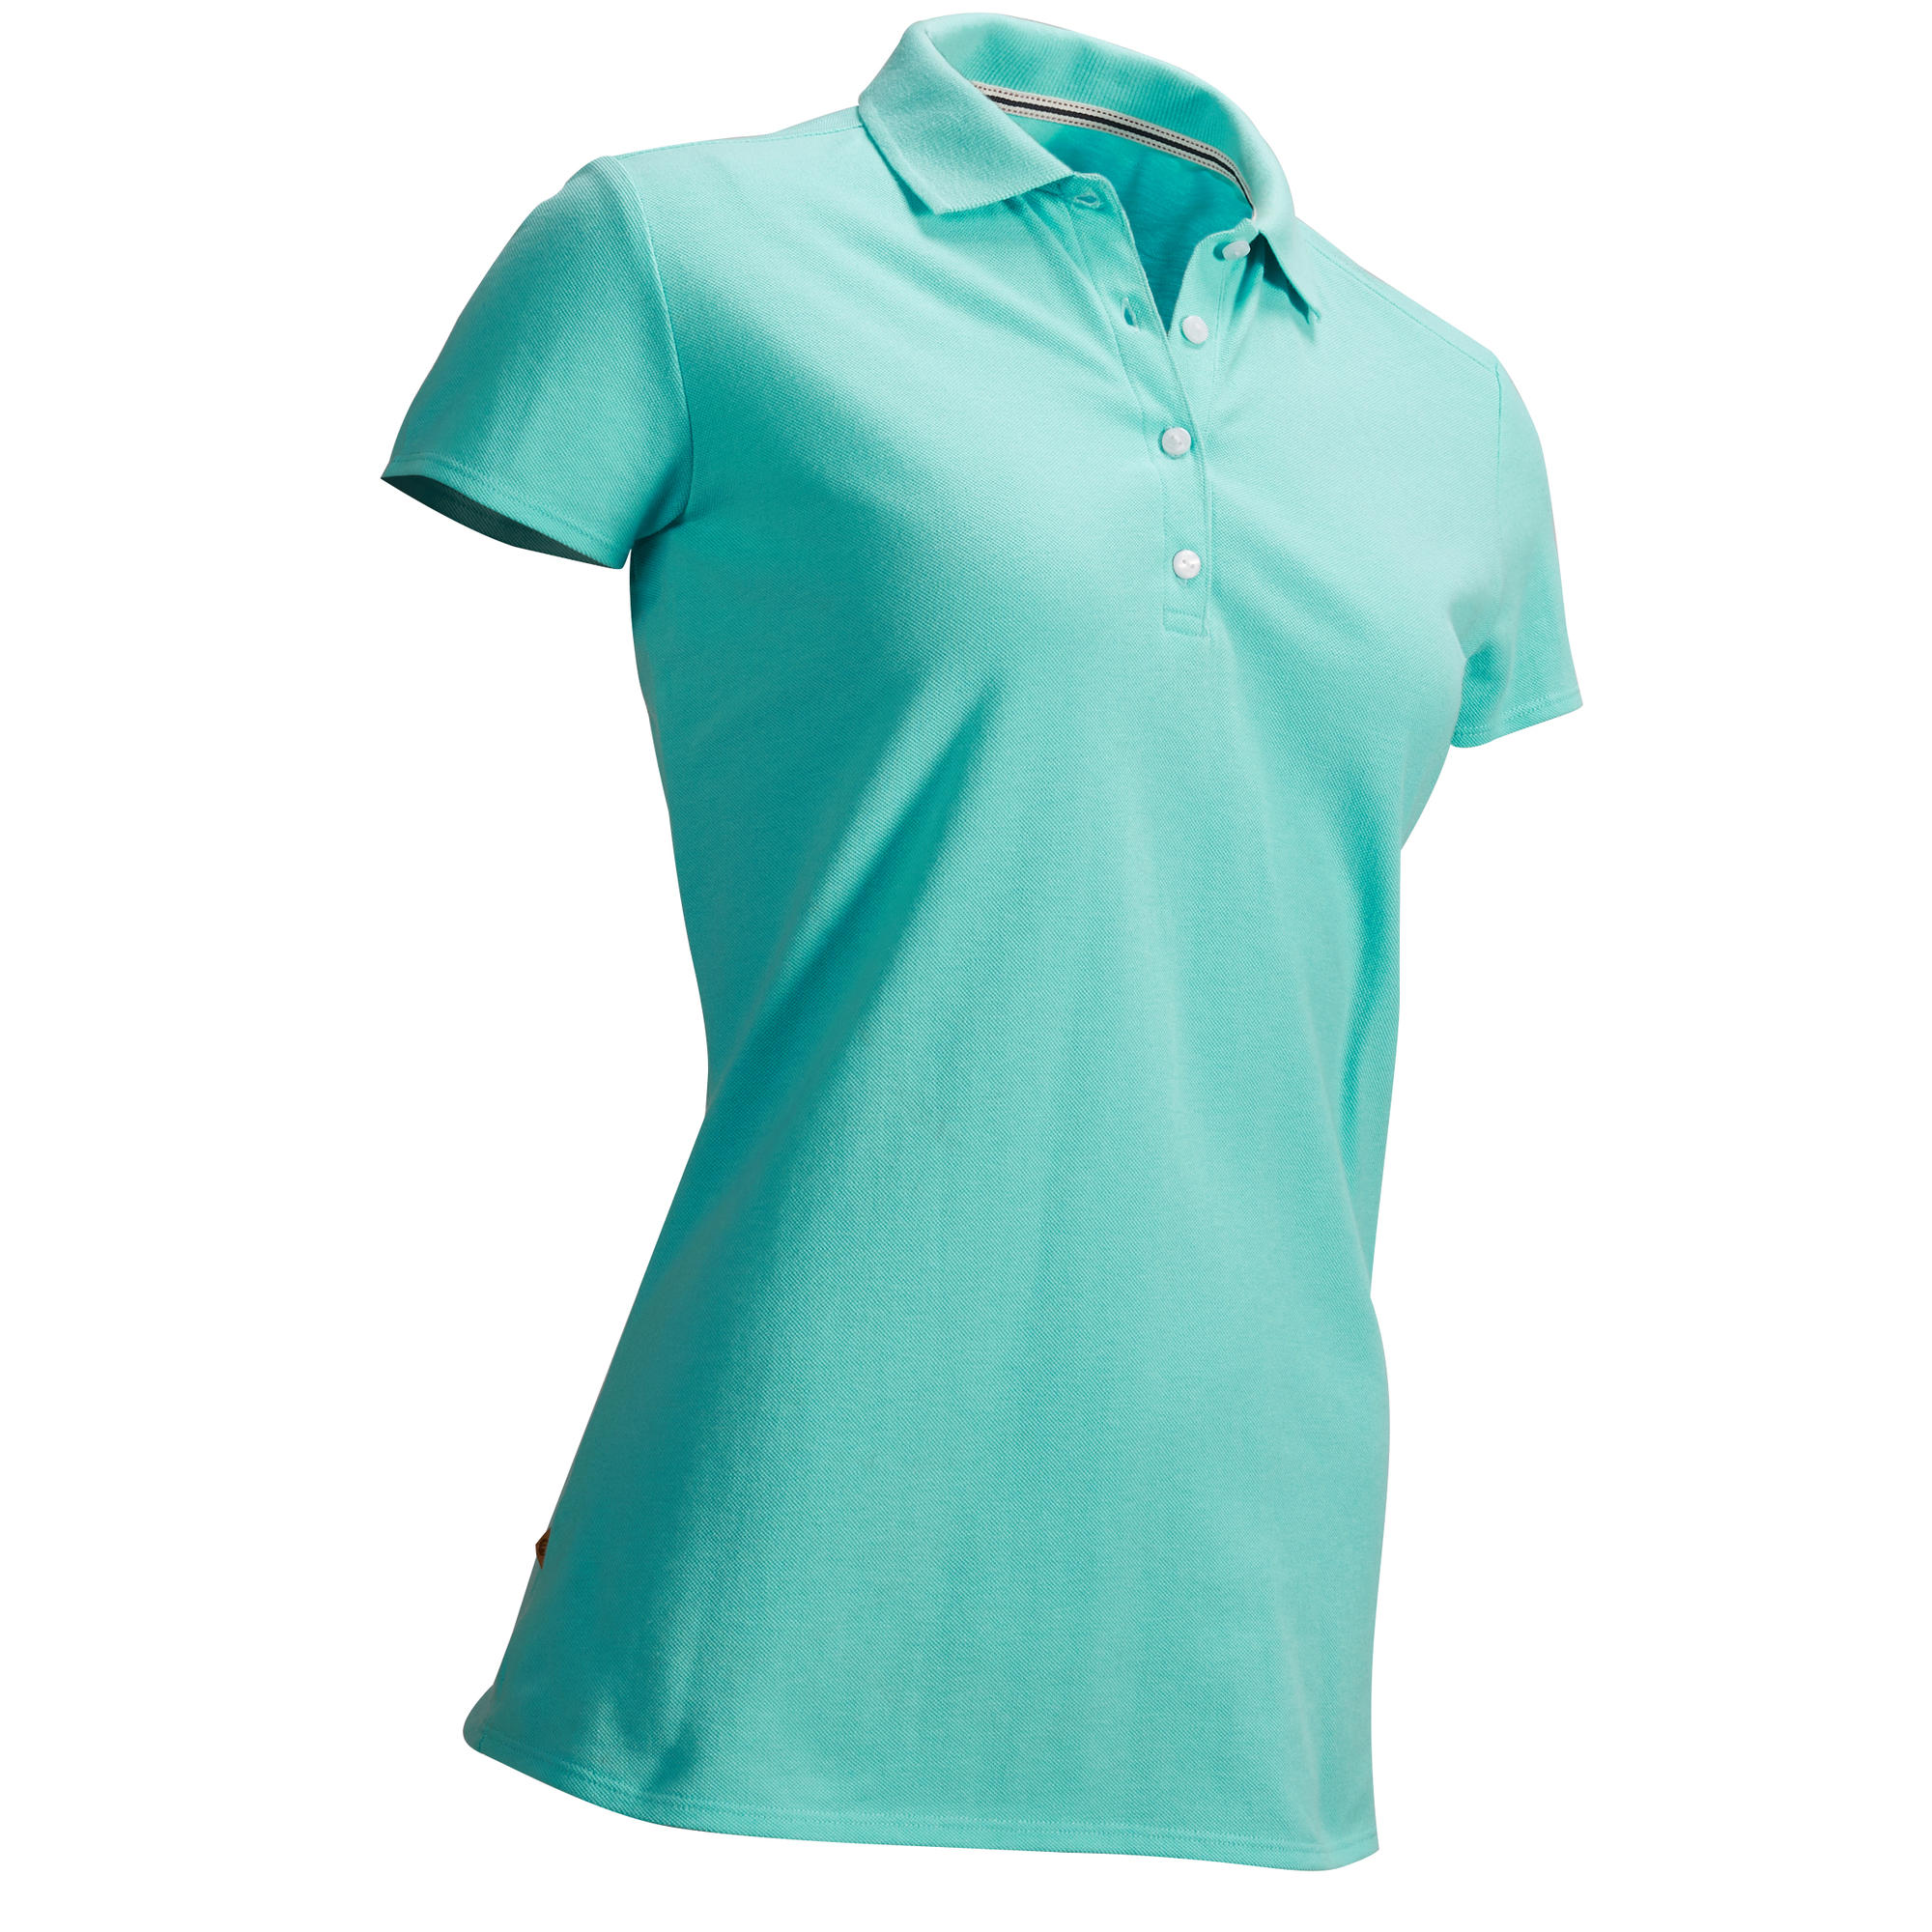 green golf shirt womens